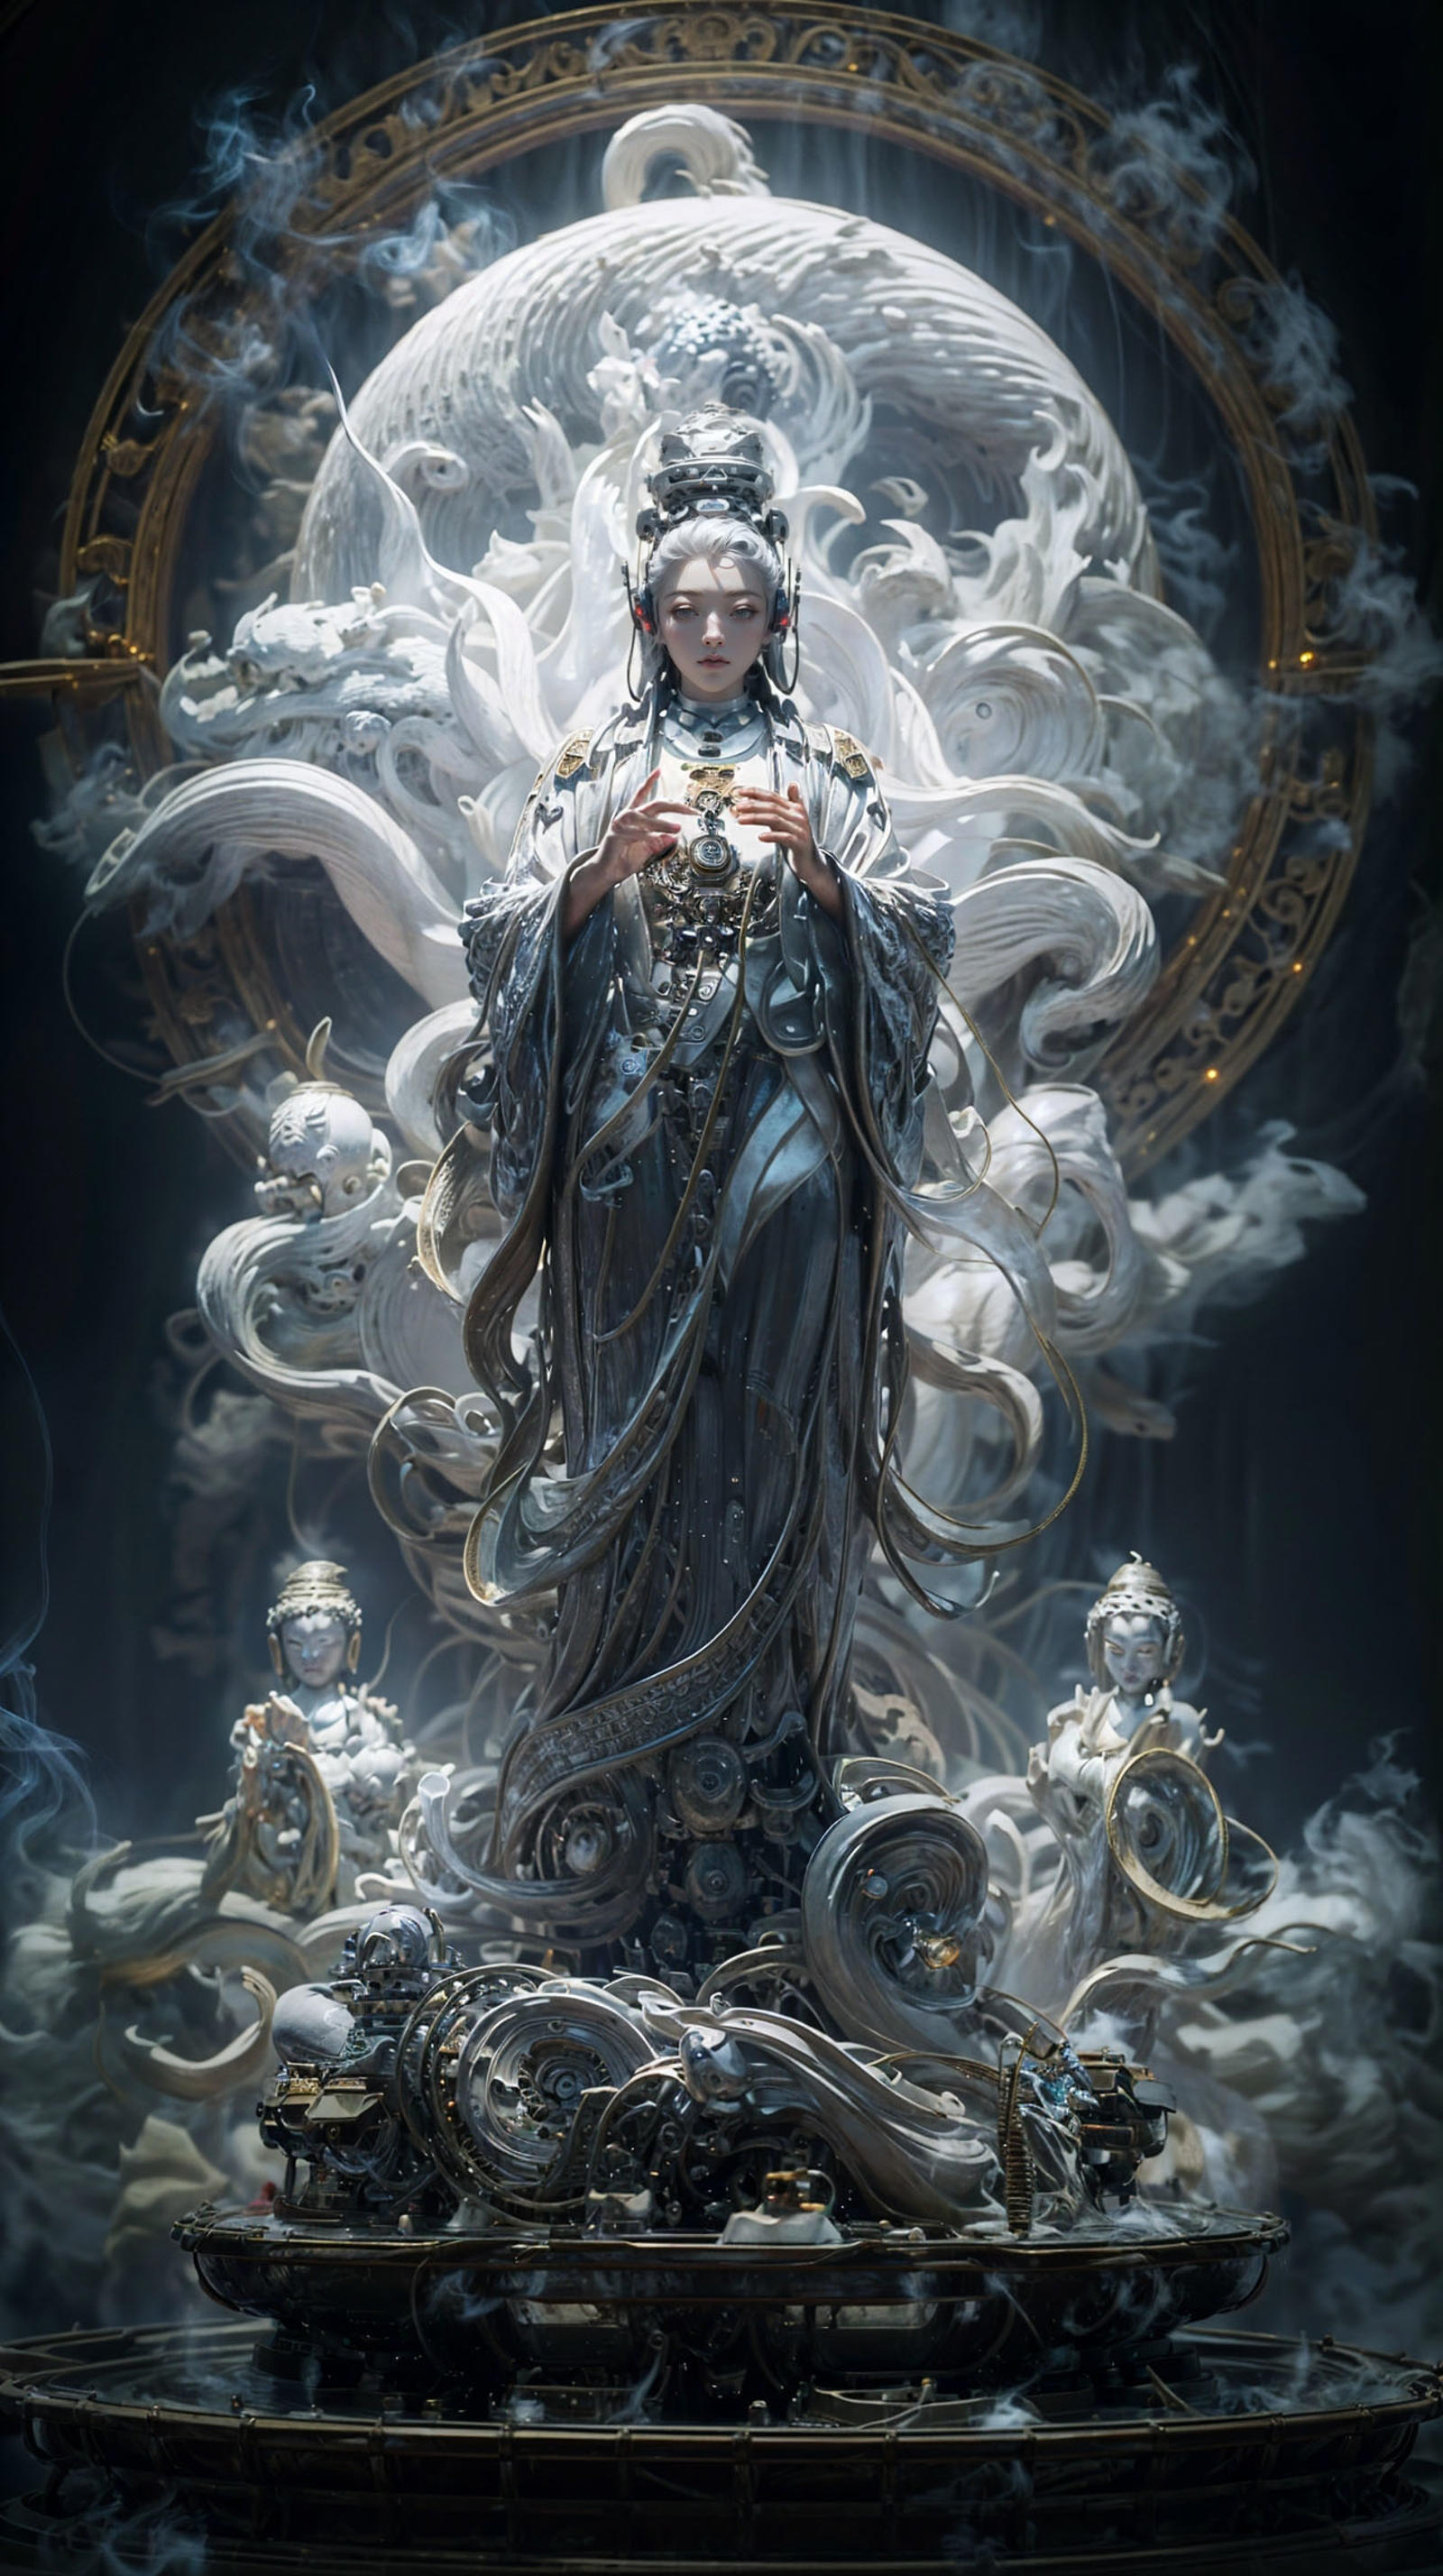 赛博观音/cyberpunk Avalokitesvara Lora image by XRYCJ